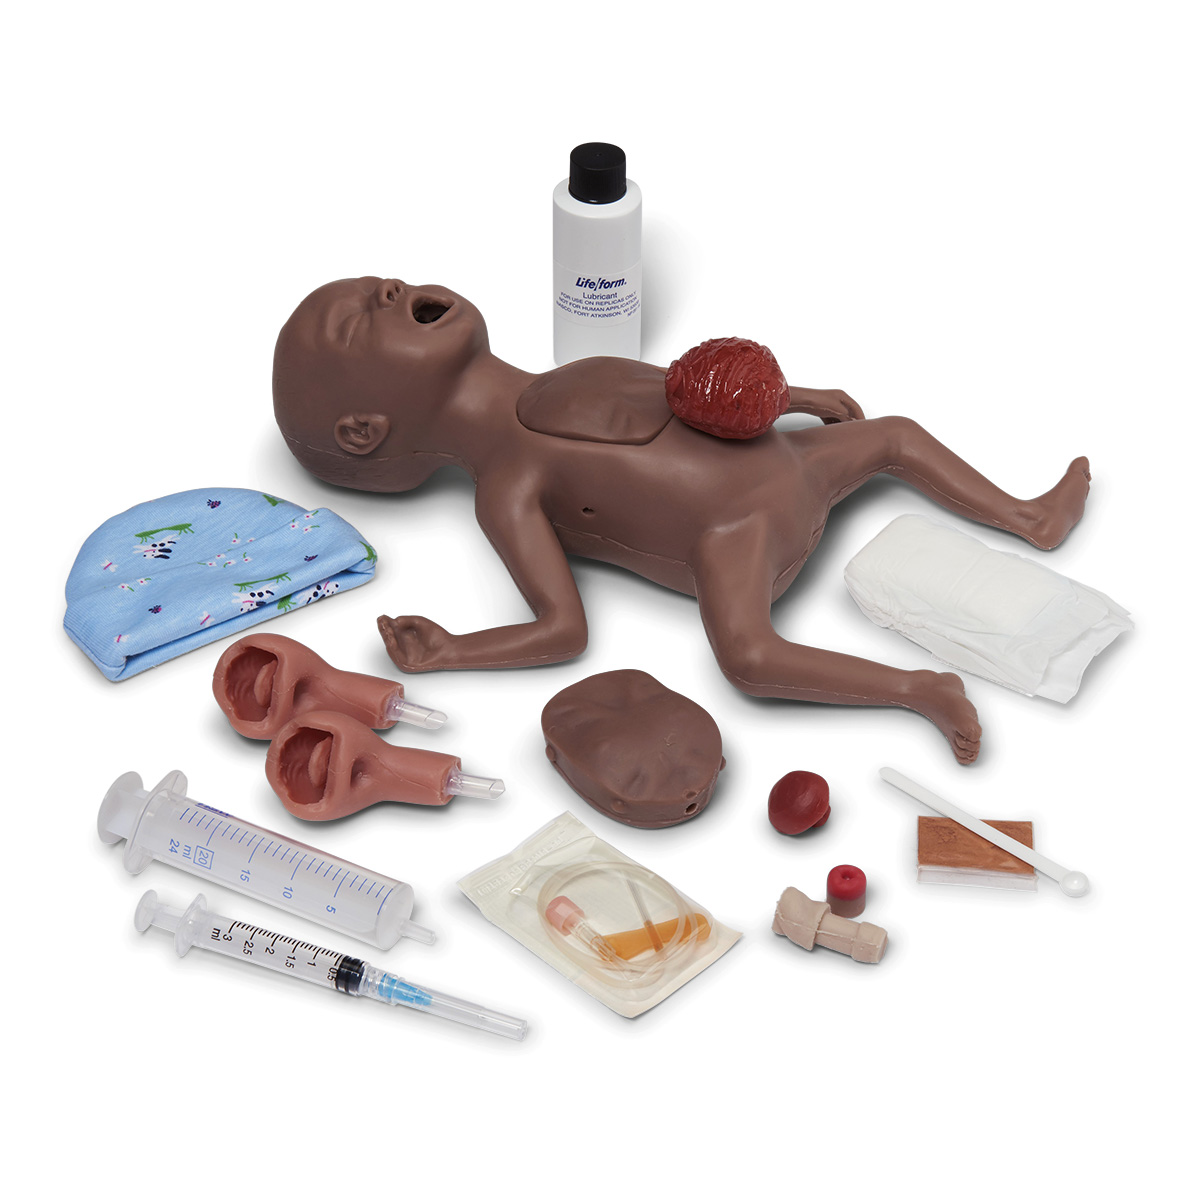 Micro-Preemie Simulator, dunkelhäutig, Bestellnummer 1021154, W44754B, LF01281U, Nasco Life/form